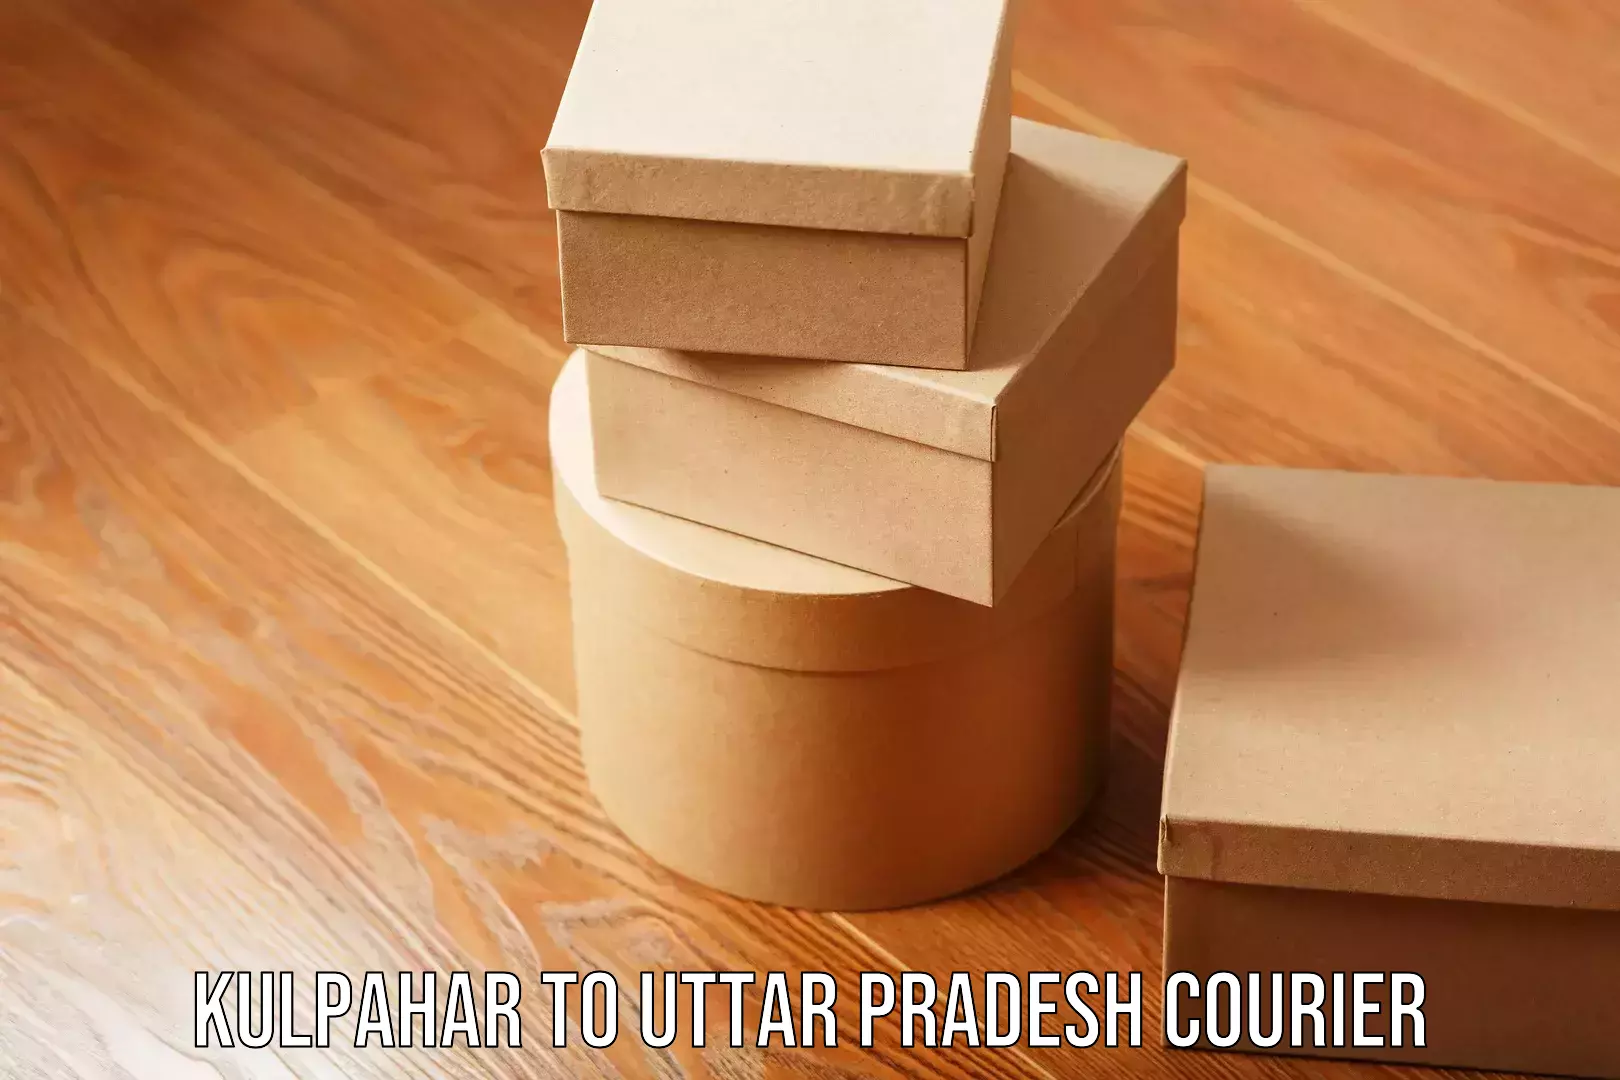 Furniture moving service Kulpahar to Uttar Pradesh